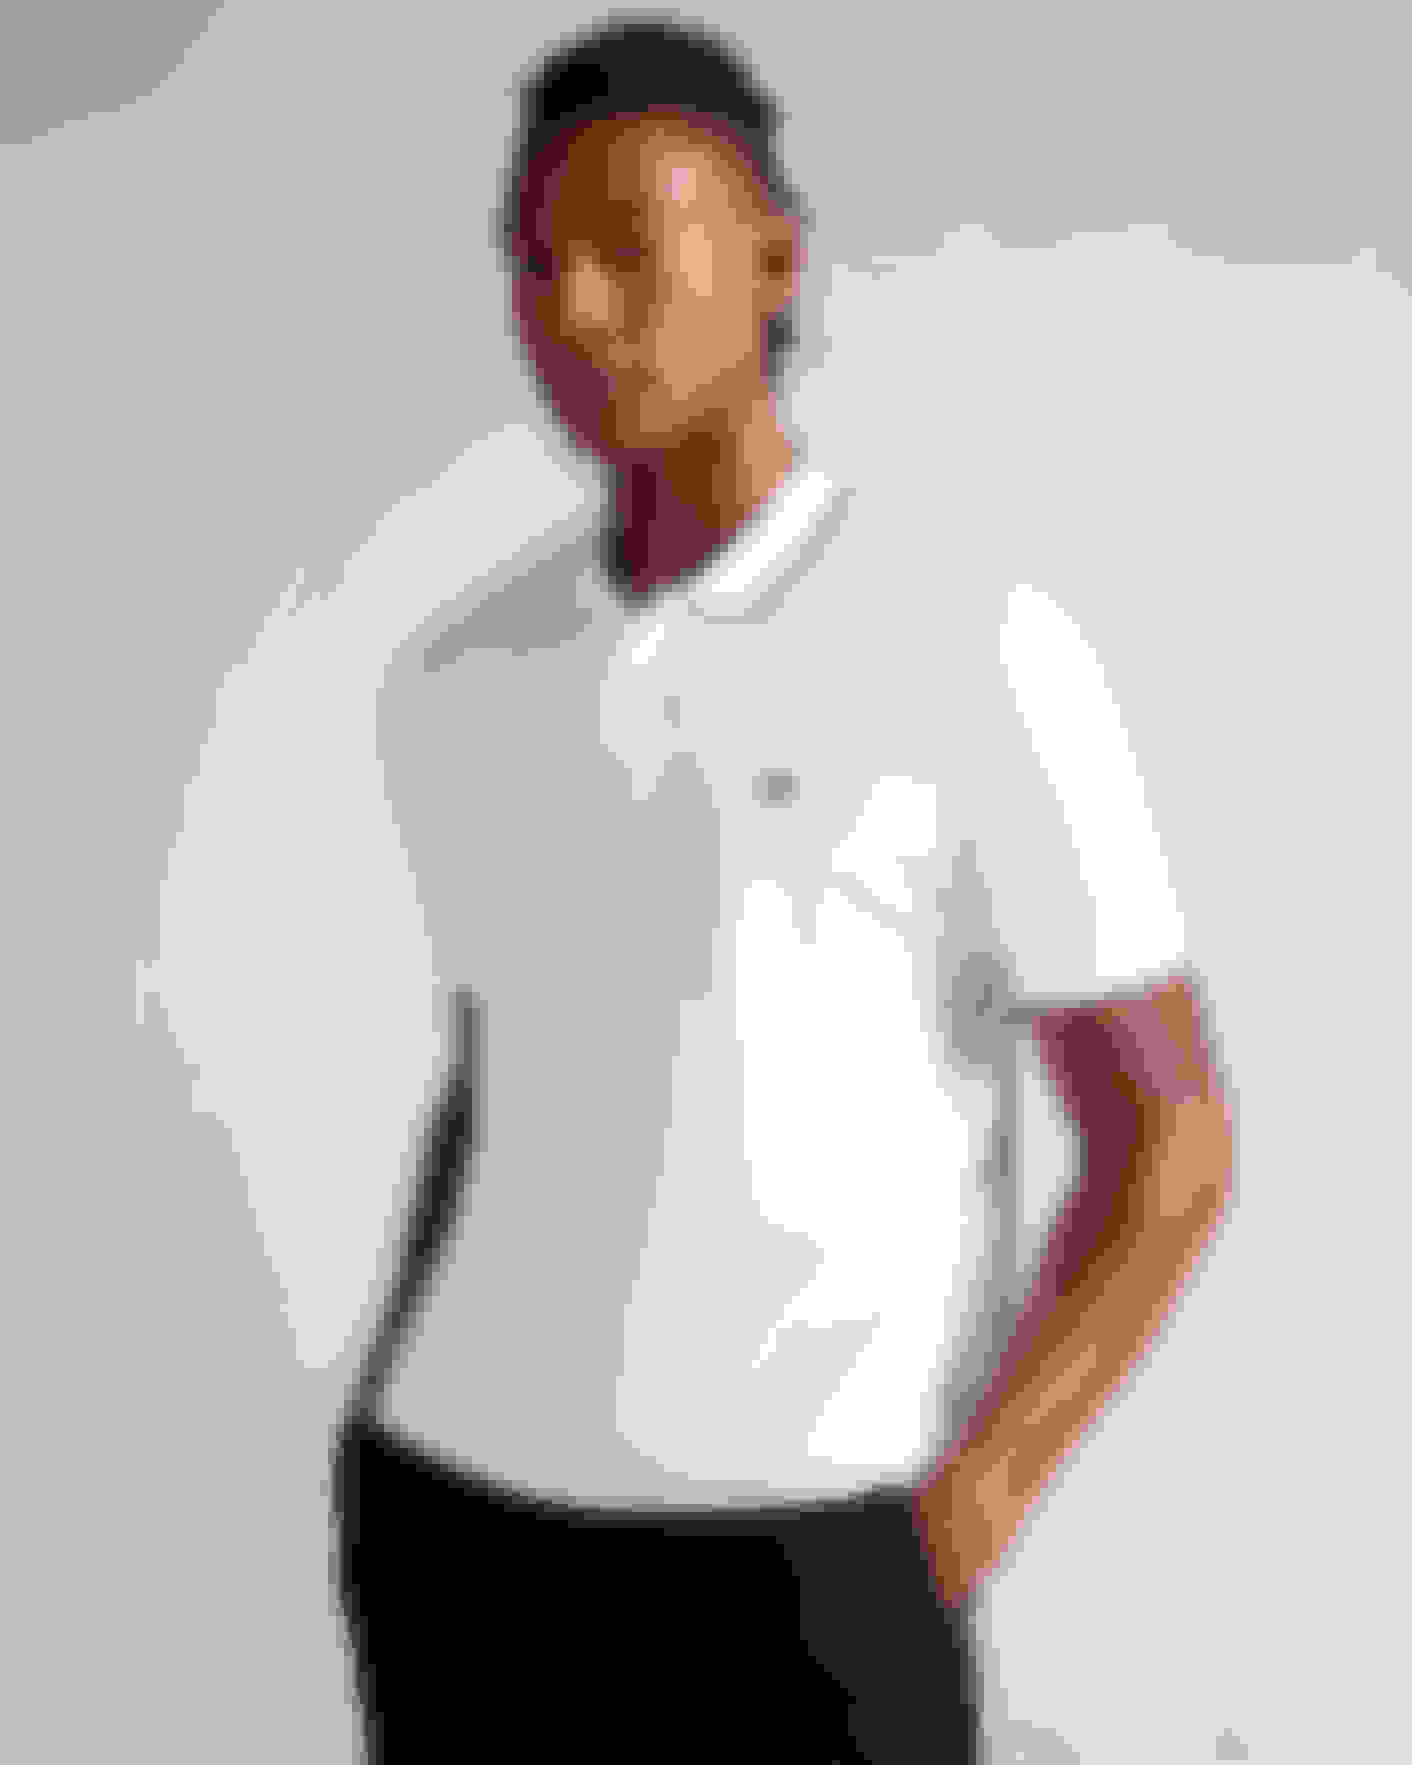 White Short Sleeve Polo Shirt Ted Baker